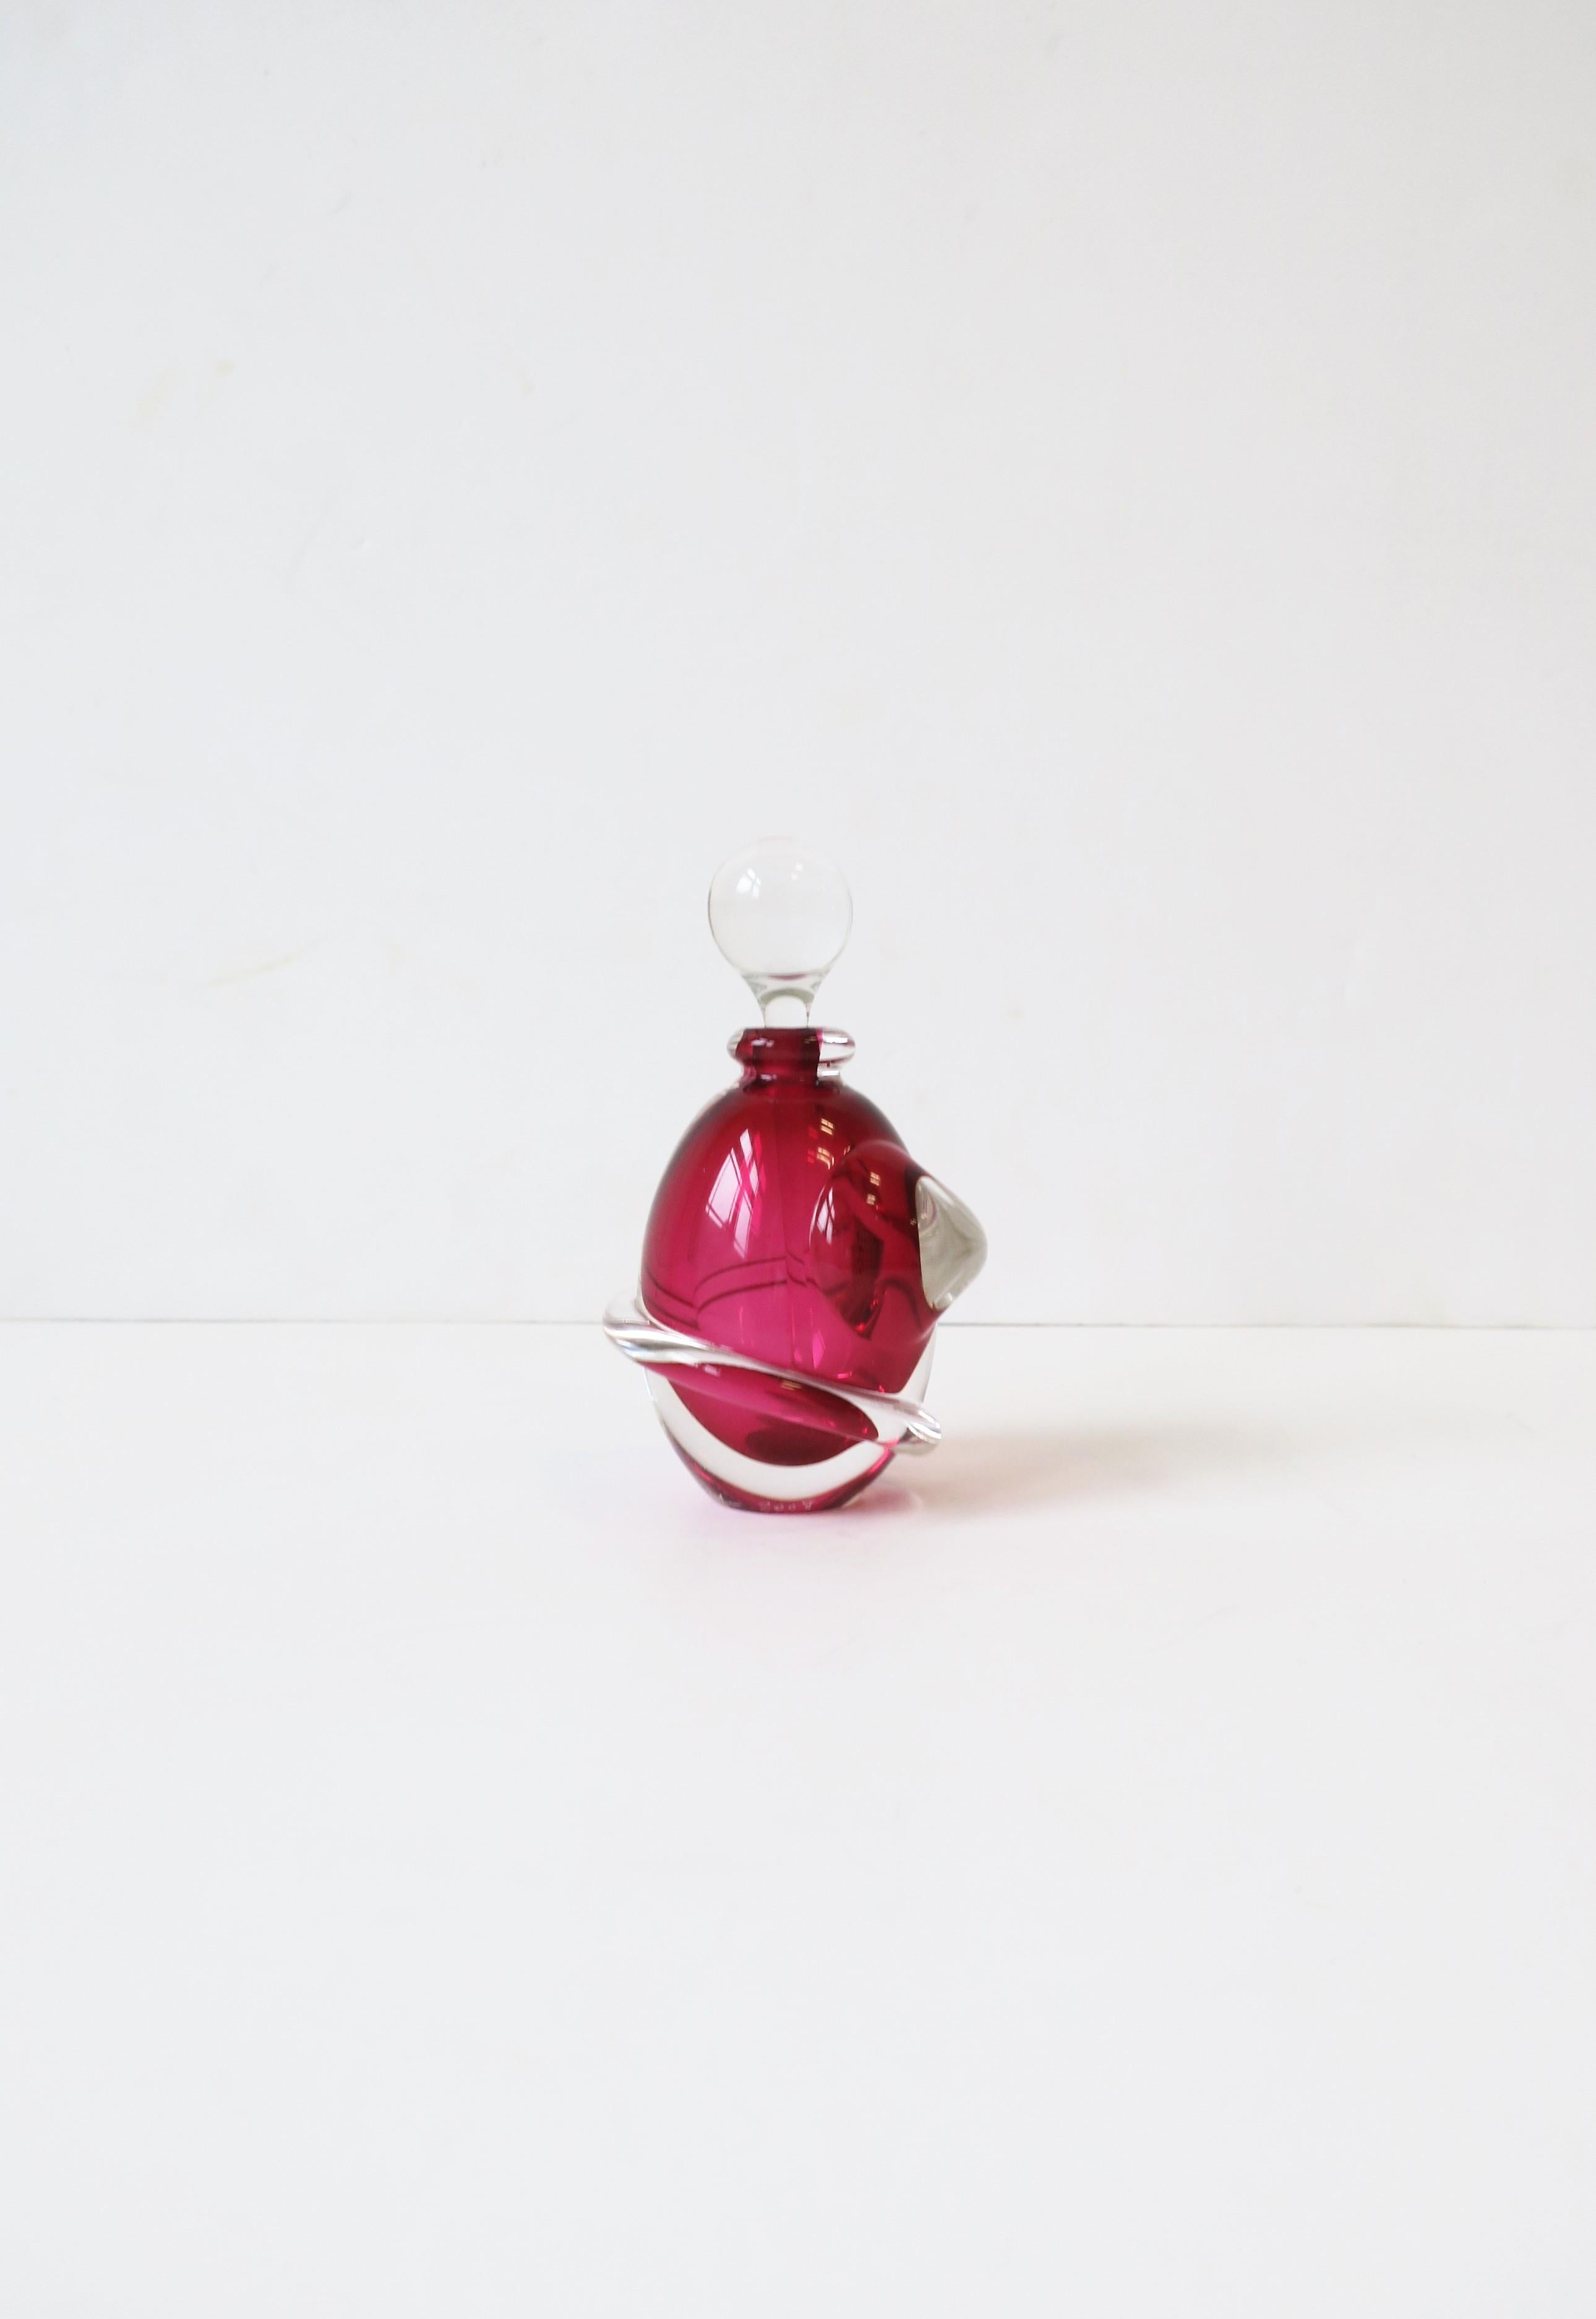 Eine sehr schöne rote Himbeere Kunst Glas Parfüm Eitelkeit Flasche signiert und datiert auf dem Boden, etwa Anfang des 21. Jahrhunderts, 2008. Die Flasche ist aus rotem Himbeer- und klarem Kunstglas, oval in der Form mit klarem, gewundenem Design